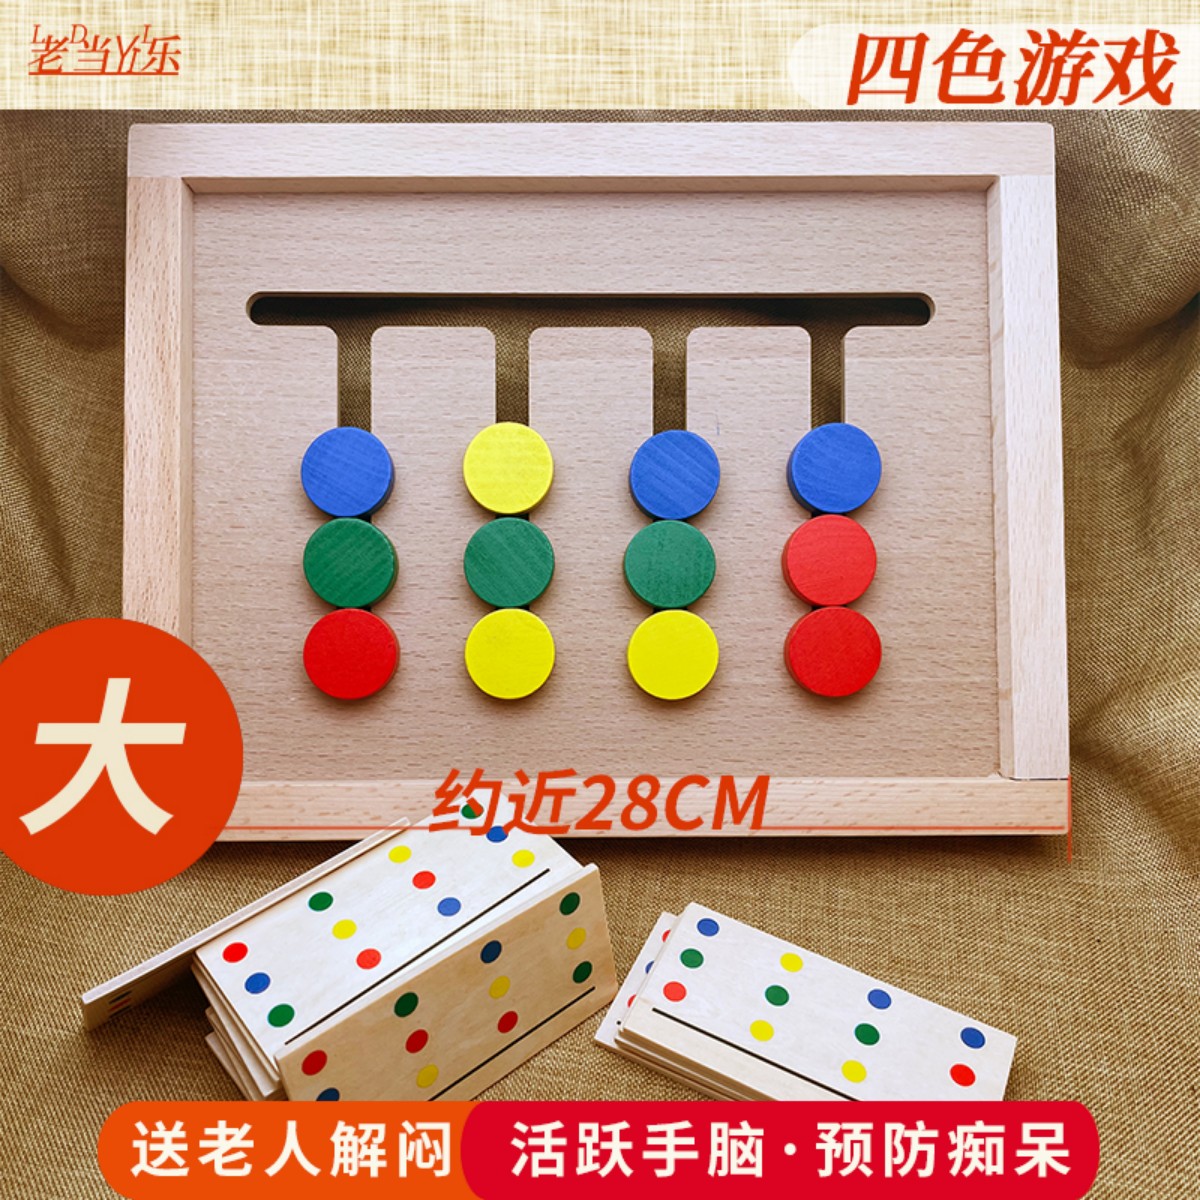 木四色走位棋板适合老人玩的游戏智力老年人益智预防痴呆玩具解闷